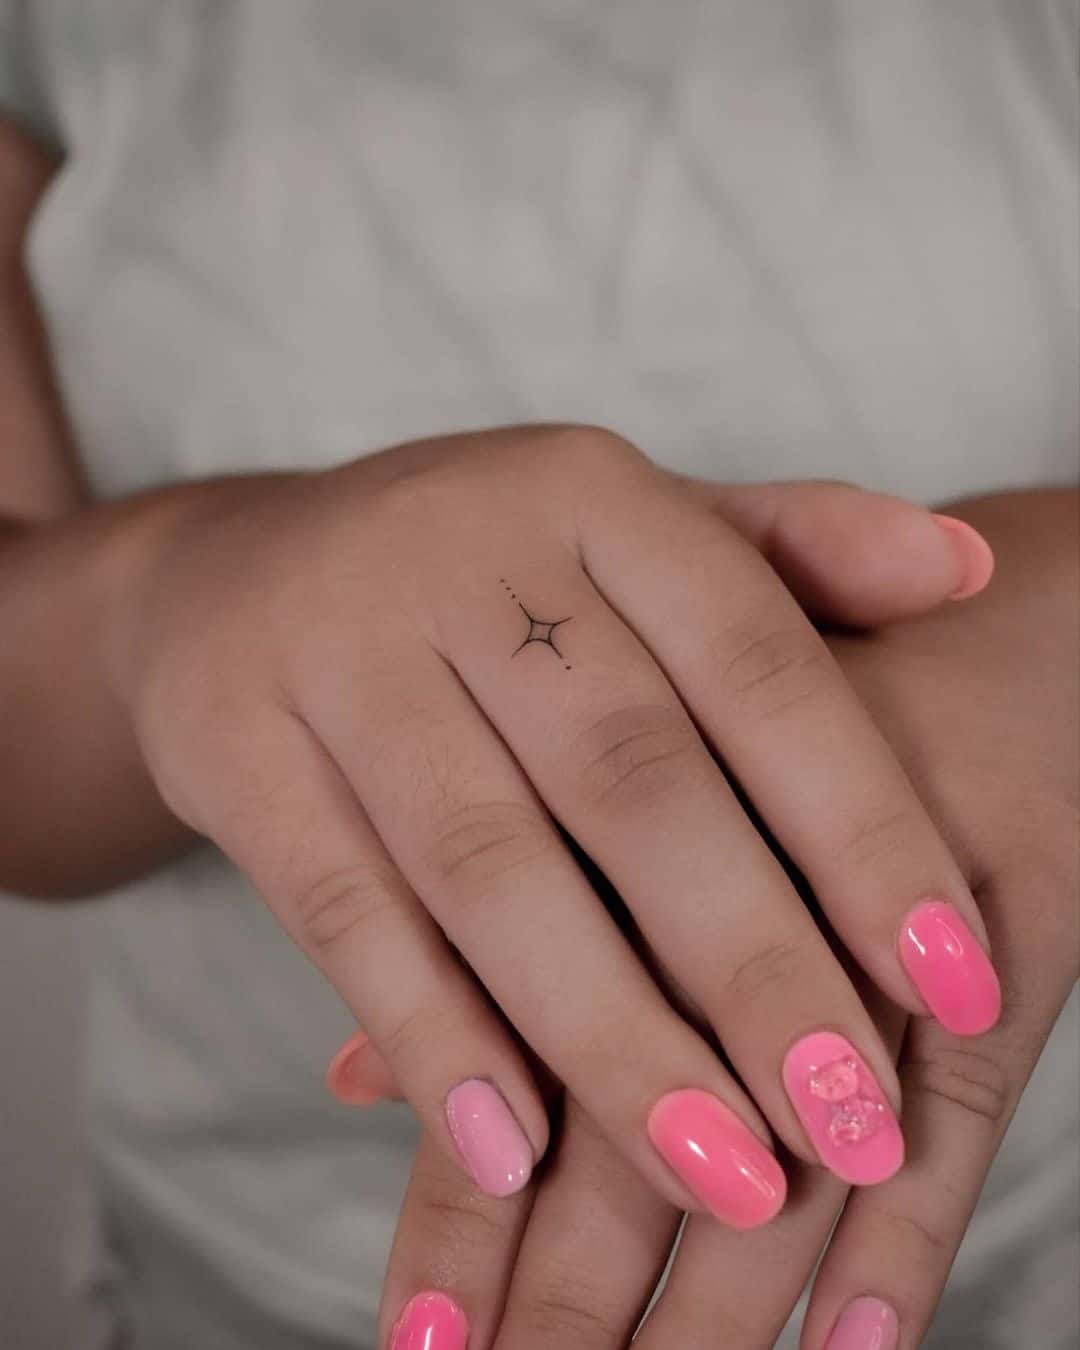 Star on finger tattoo by tatuajesimpulsoazul